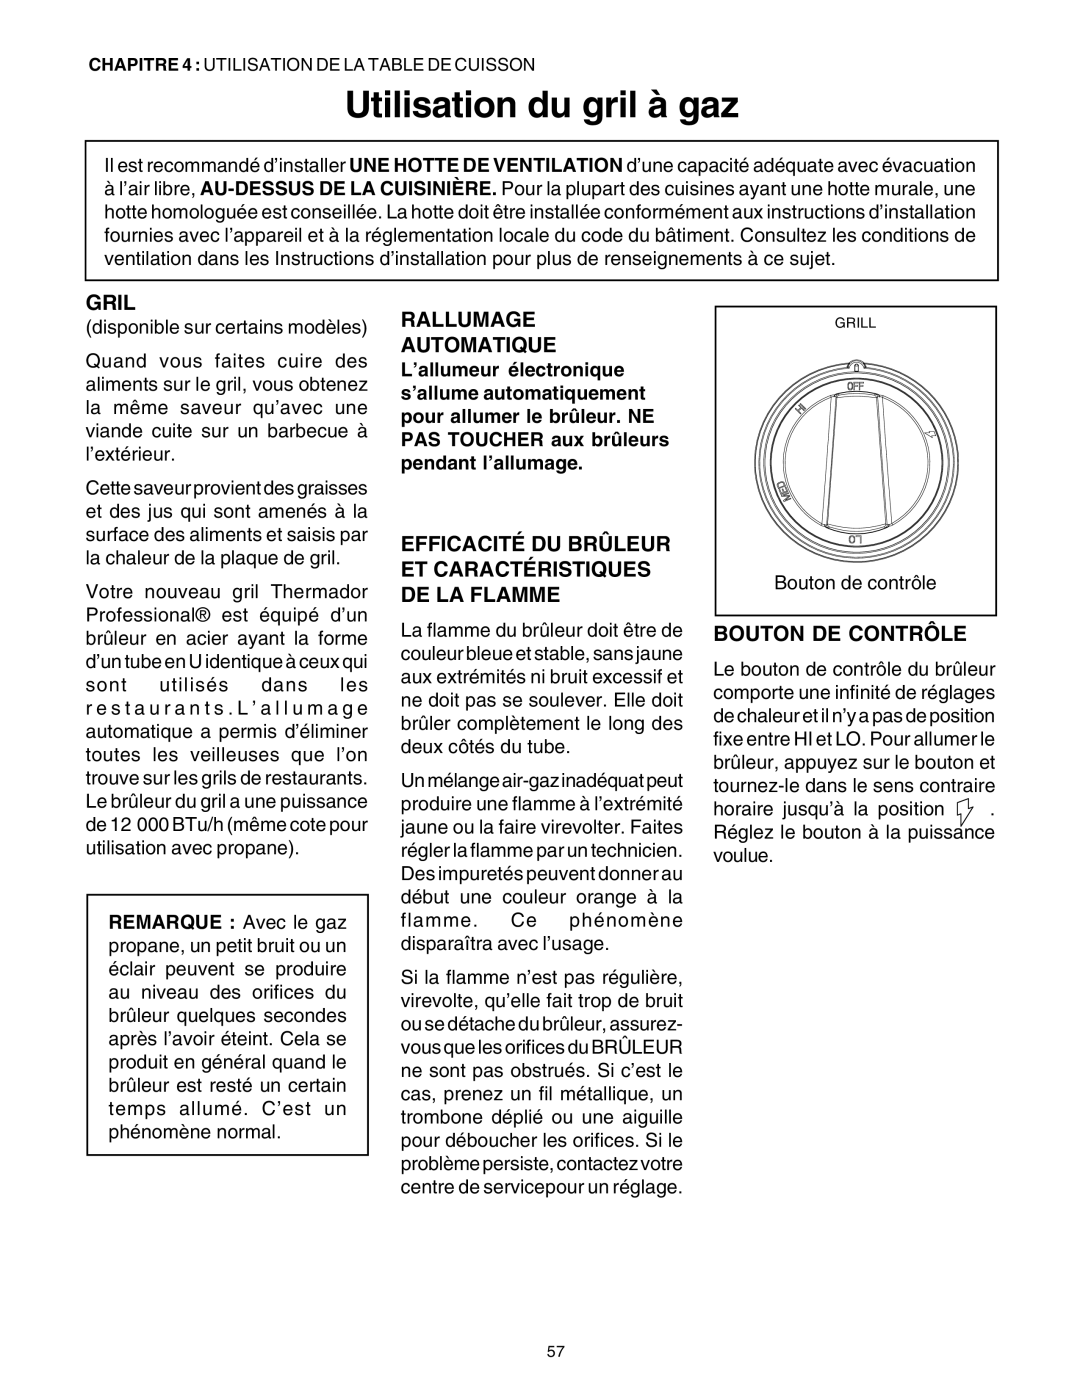 Thermador DP30 manual Utilisation du gril à gaz, Gril, Bouton De Contrôle, Rallumage Automatique 